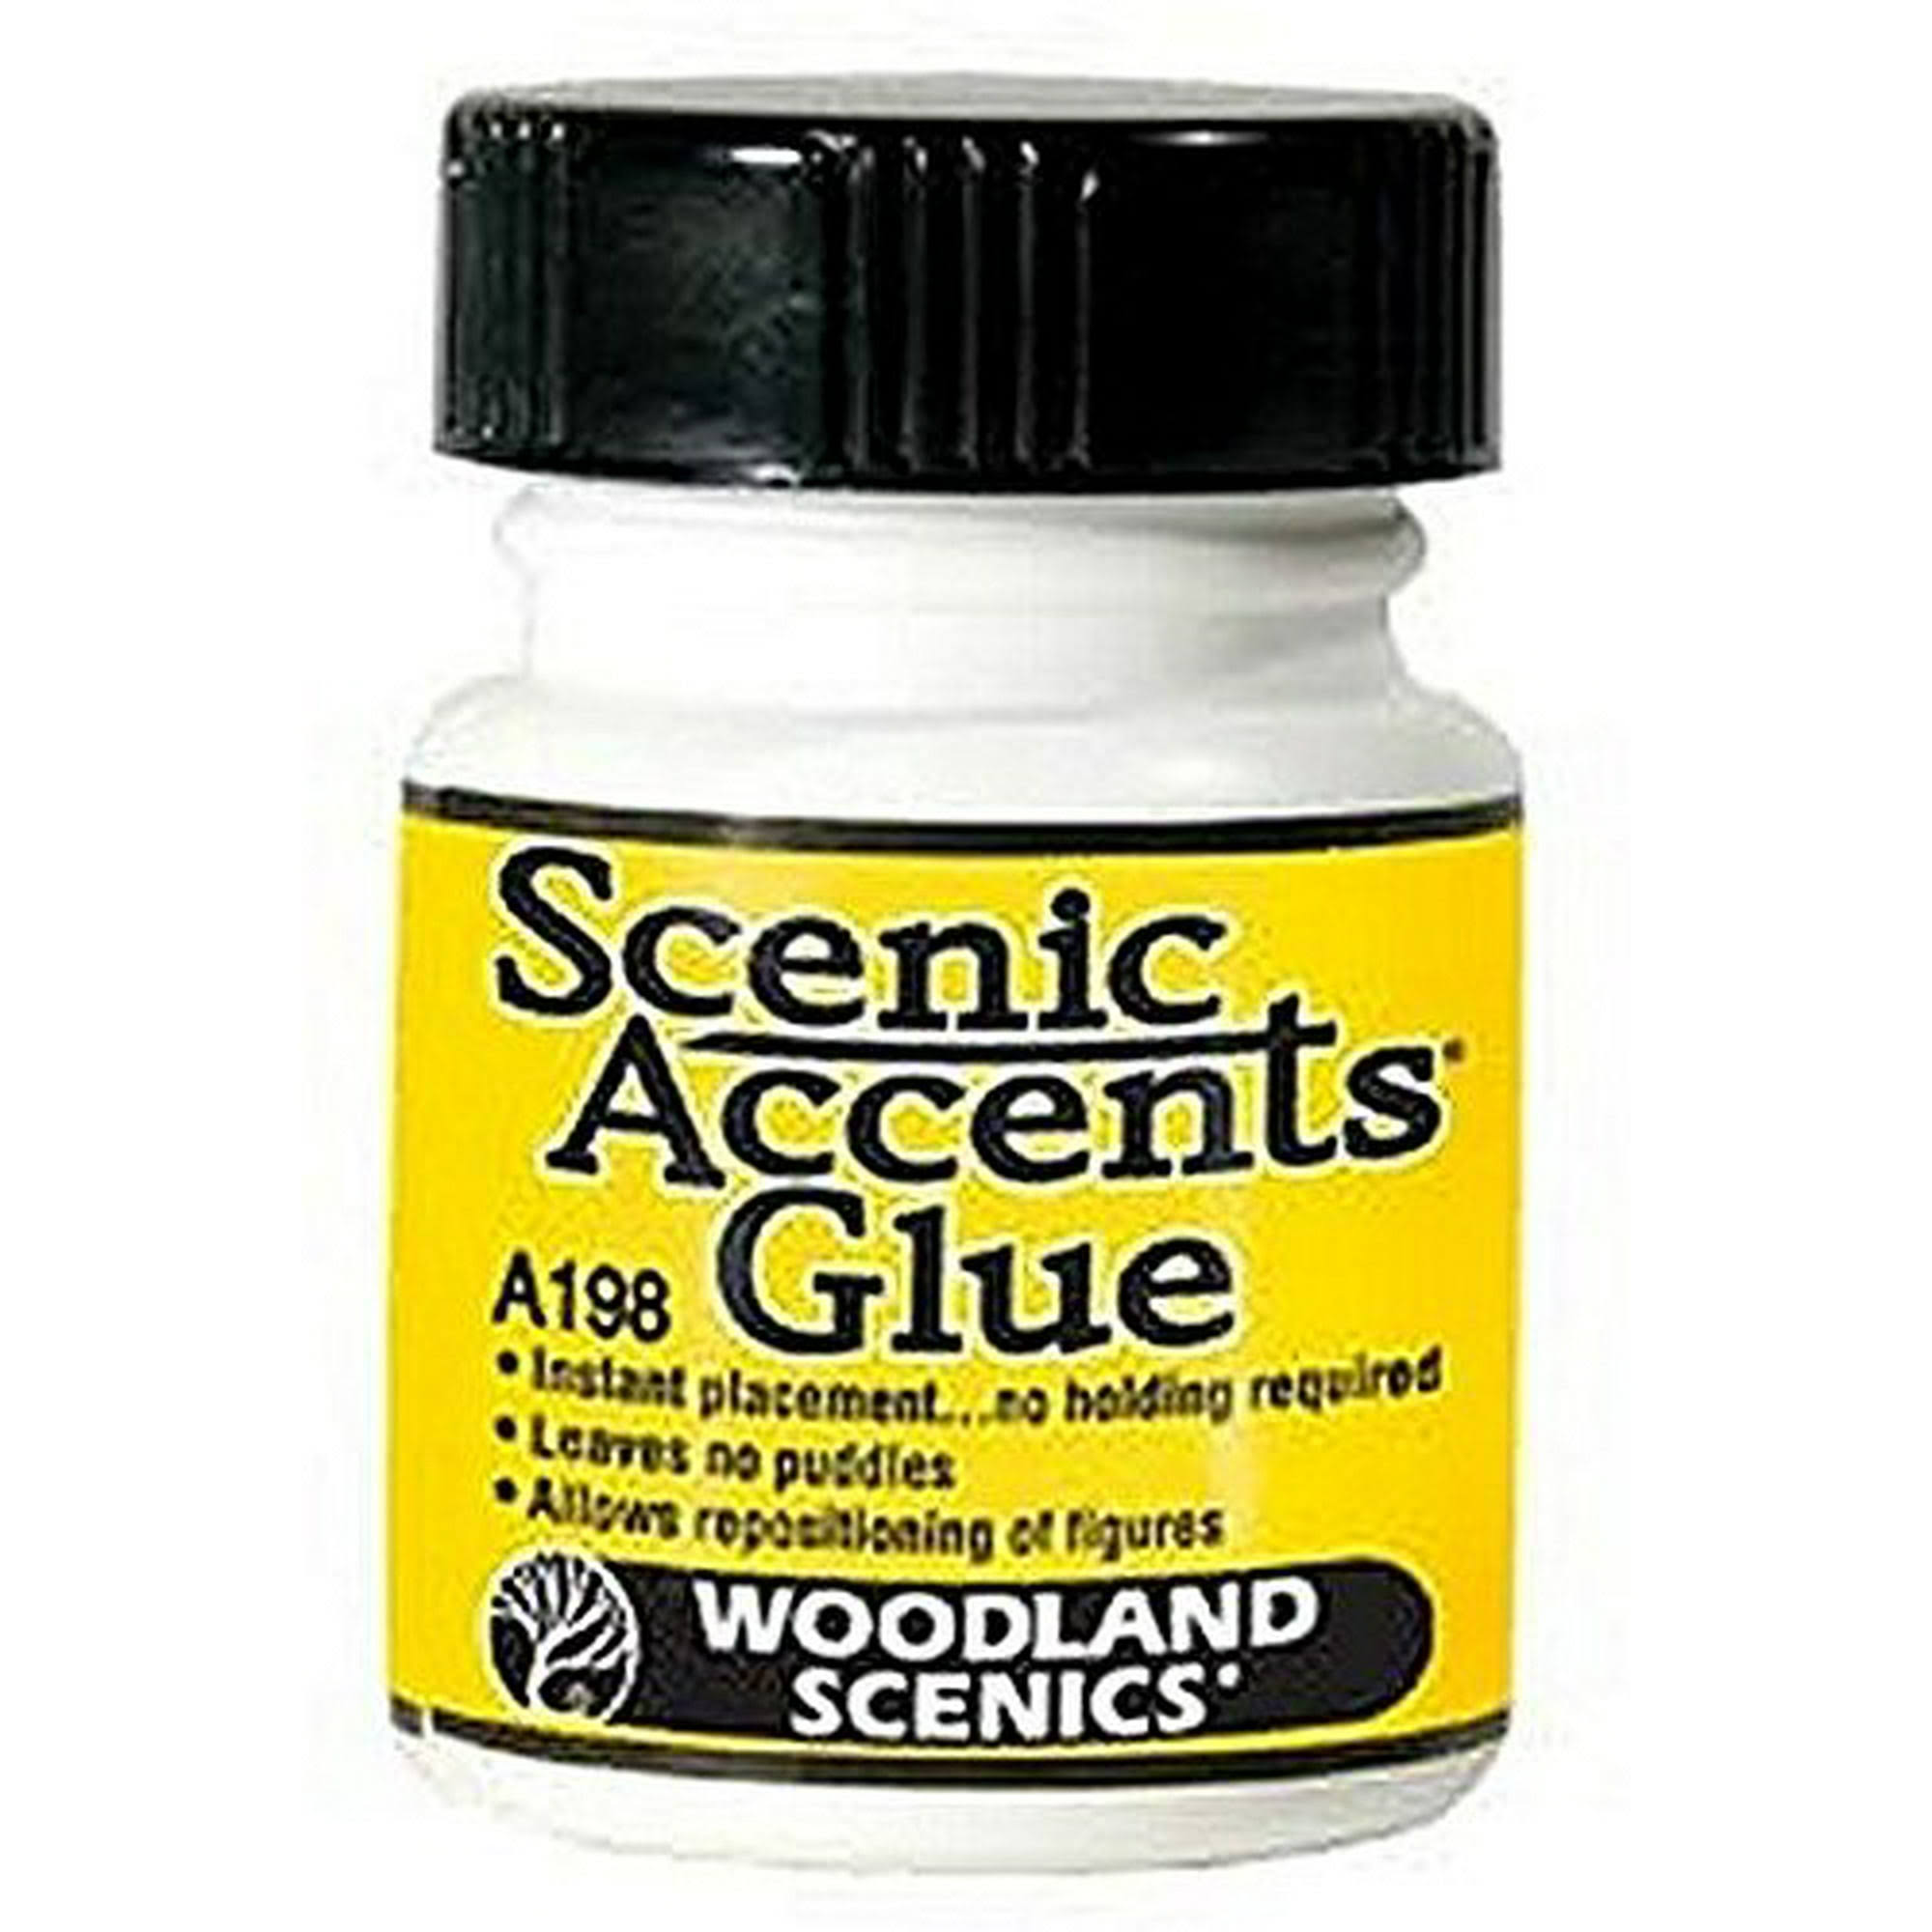 Woodland Scenics A198 Scenic Accent Glue